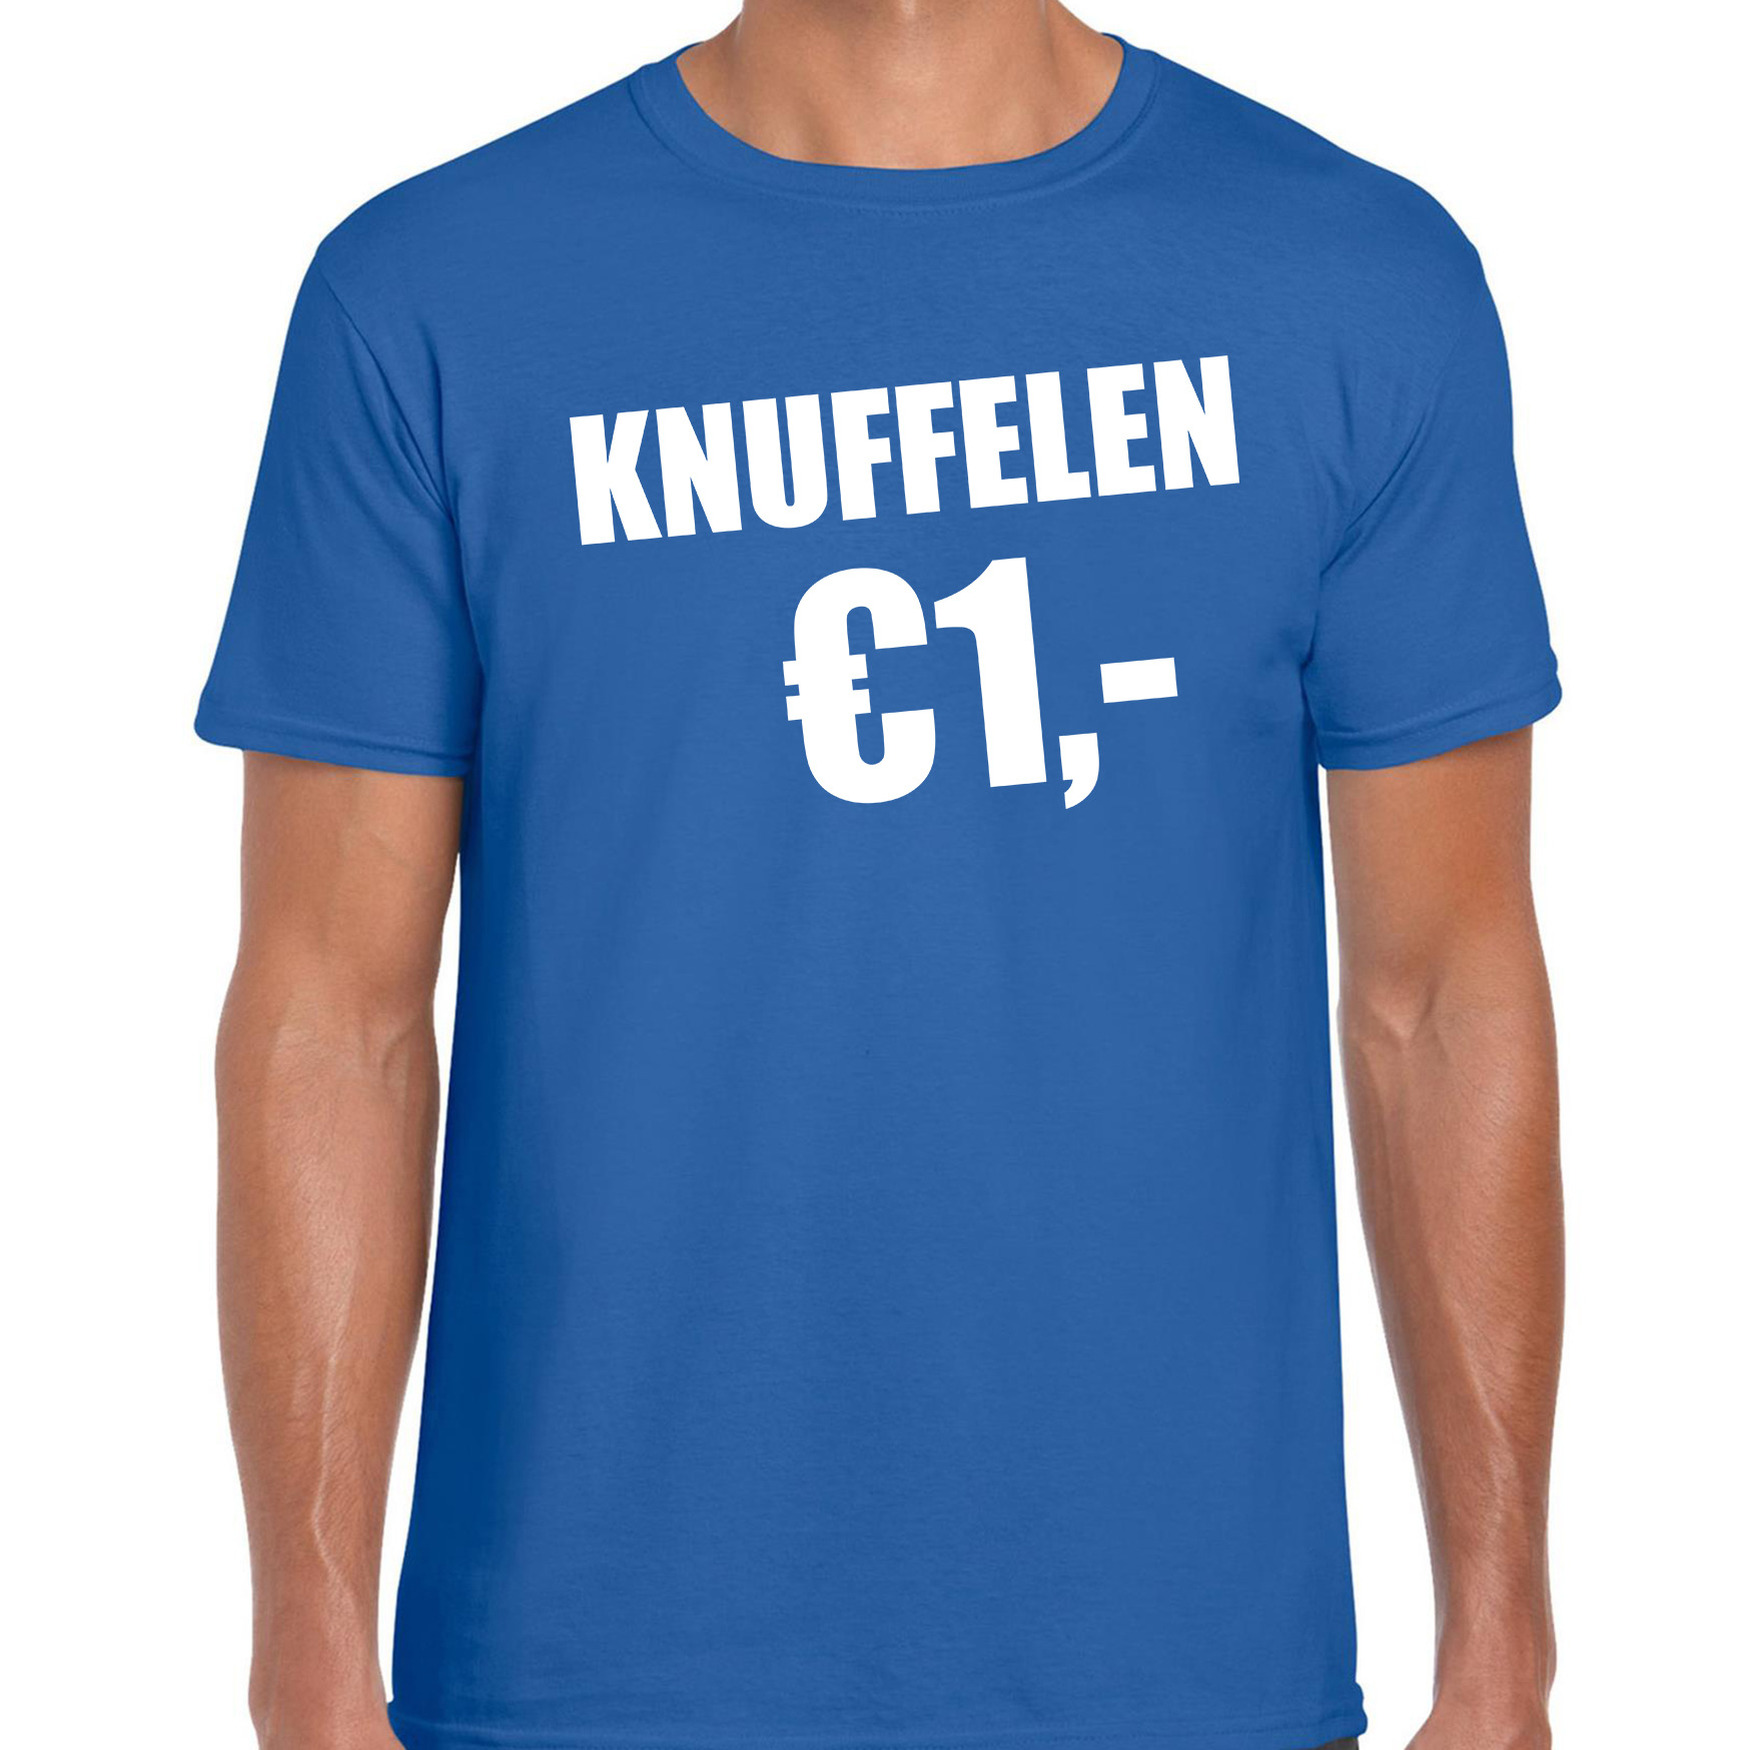 Fun t-shirt knuffelen 1 euro blauw voor heren